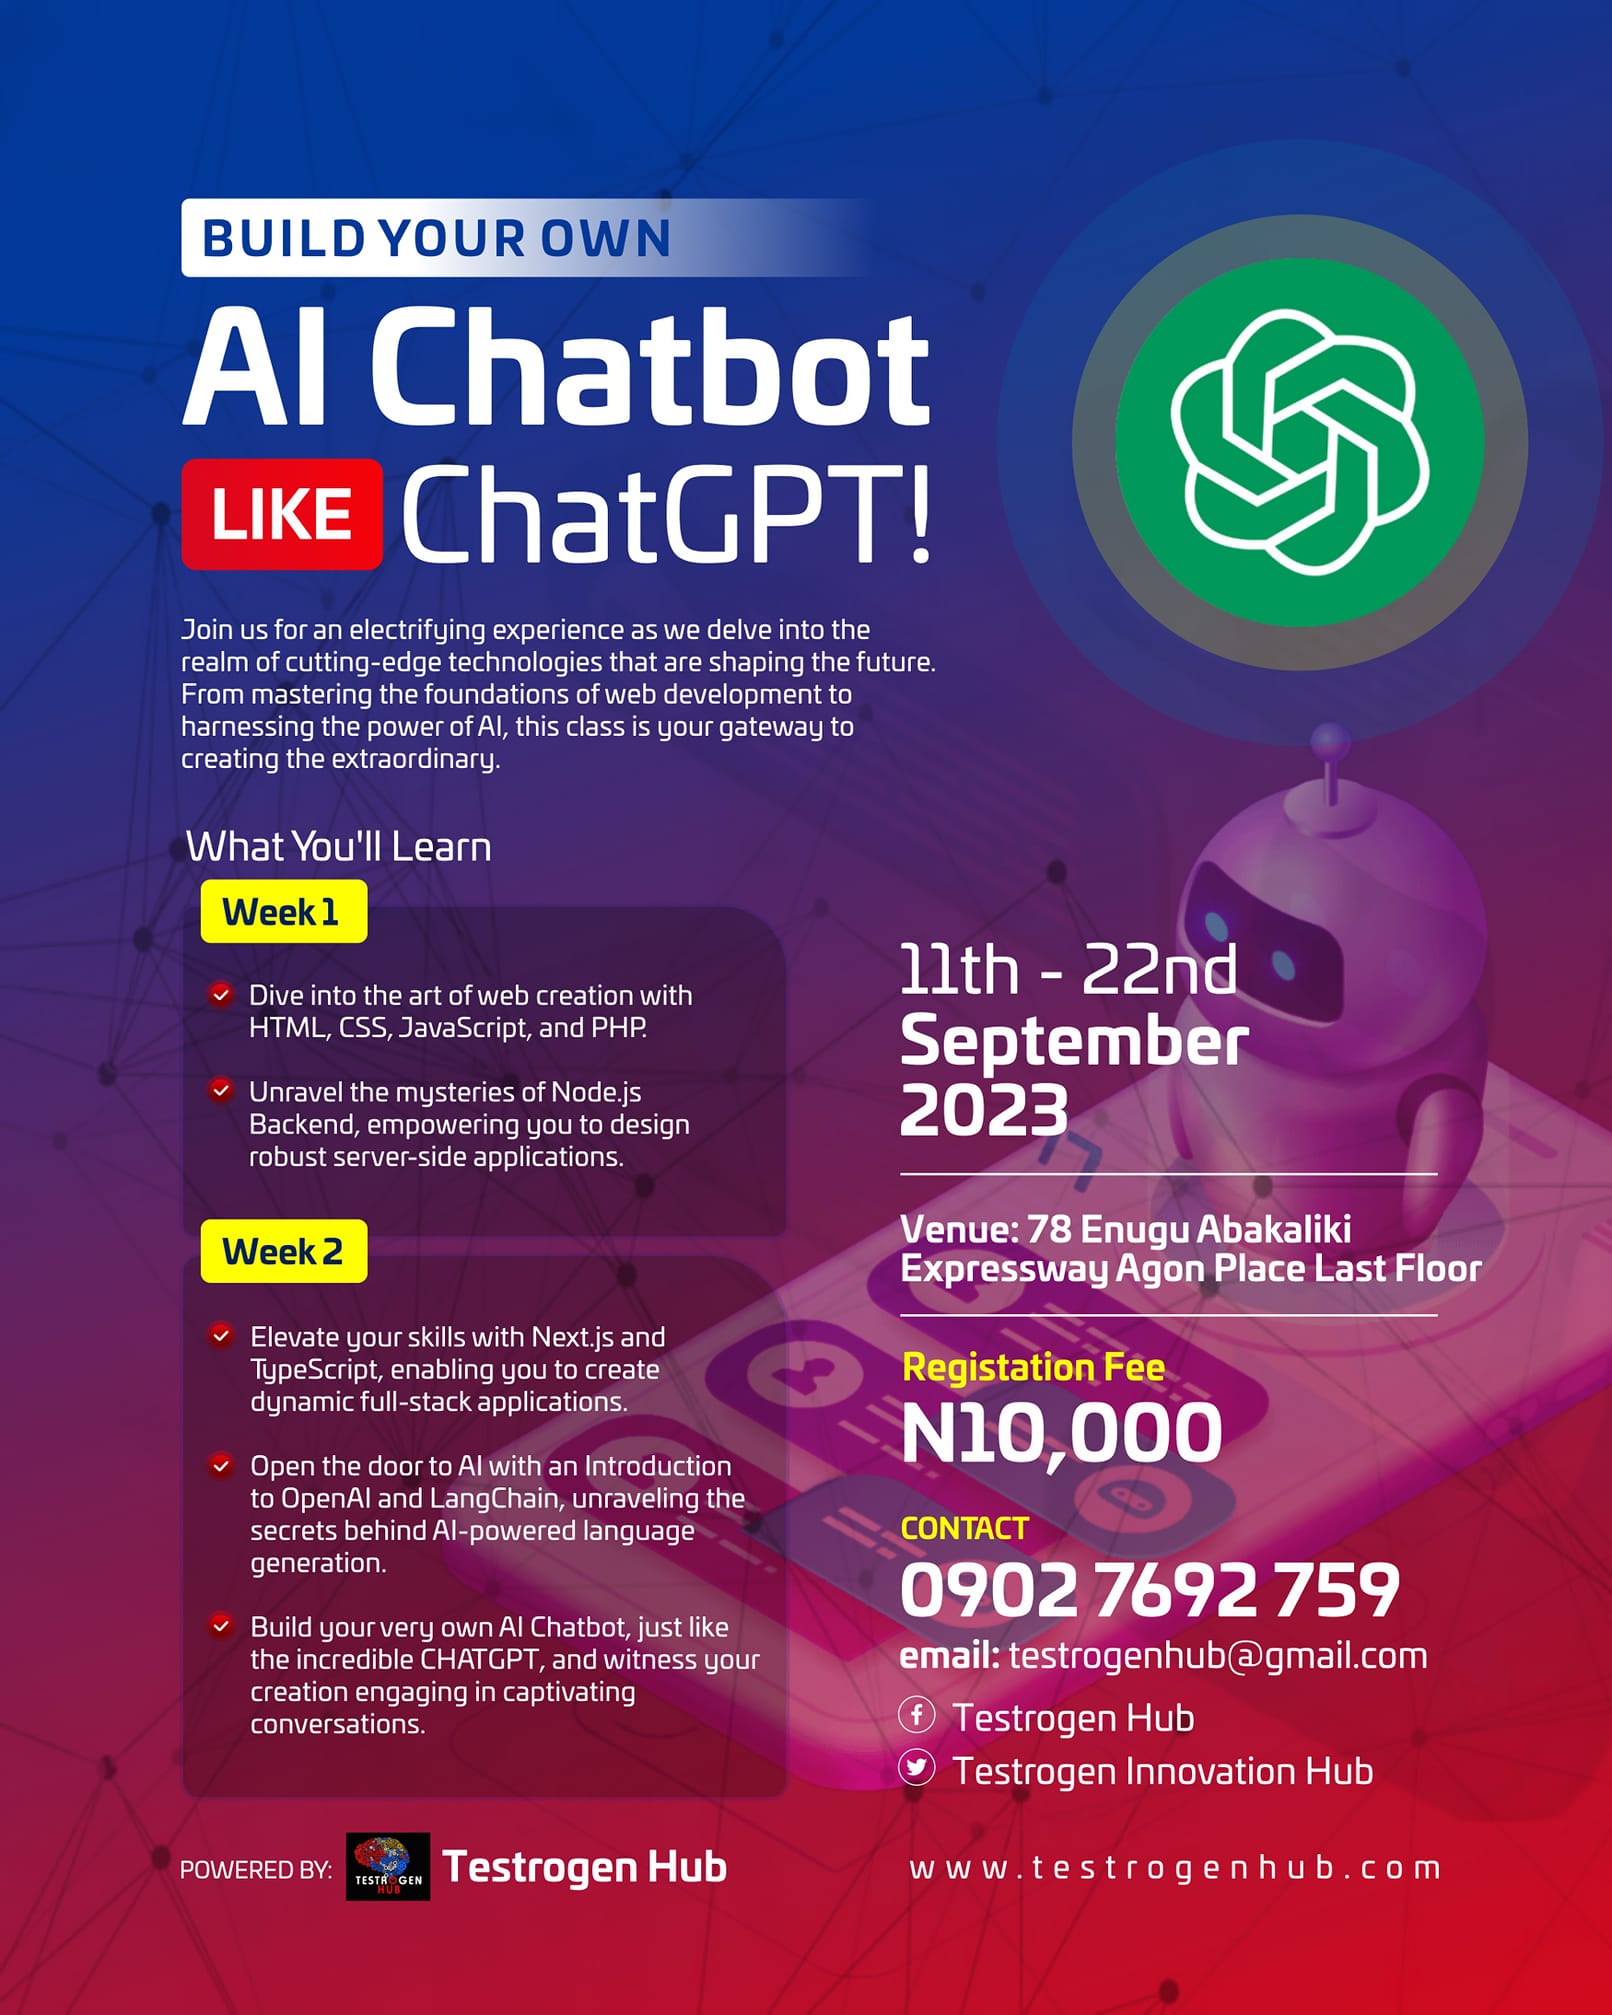 Build AI Chatbot like CHATGPT